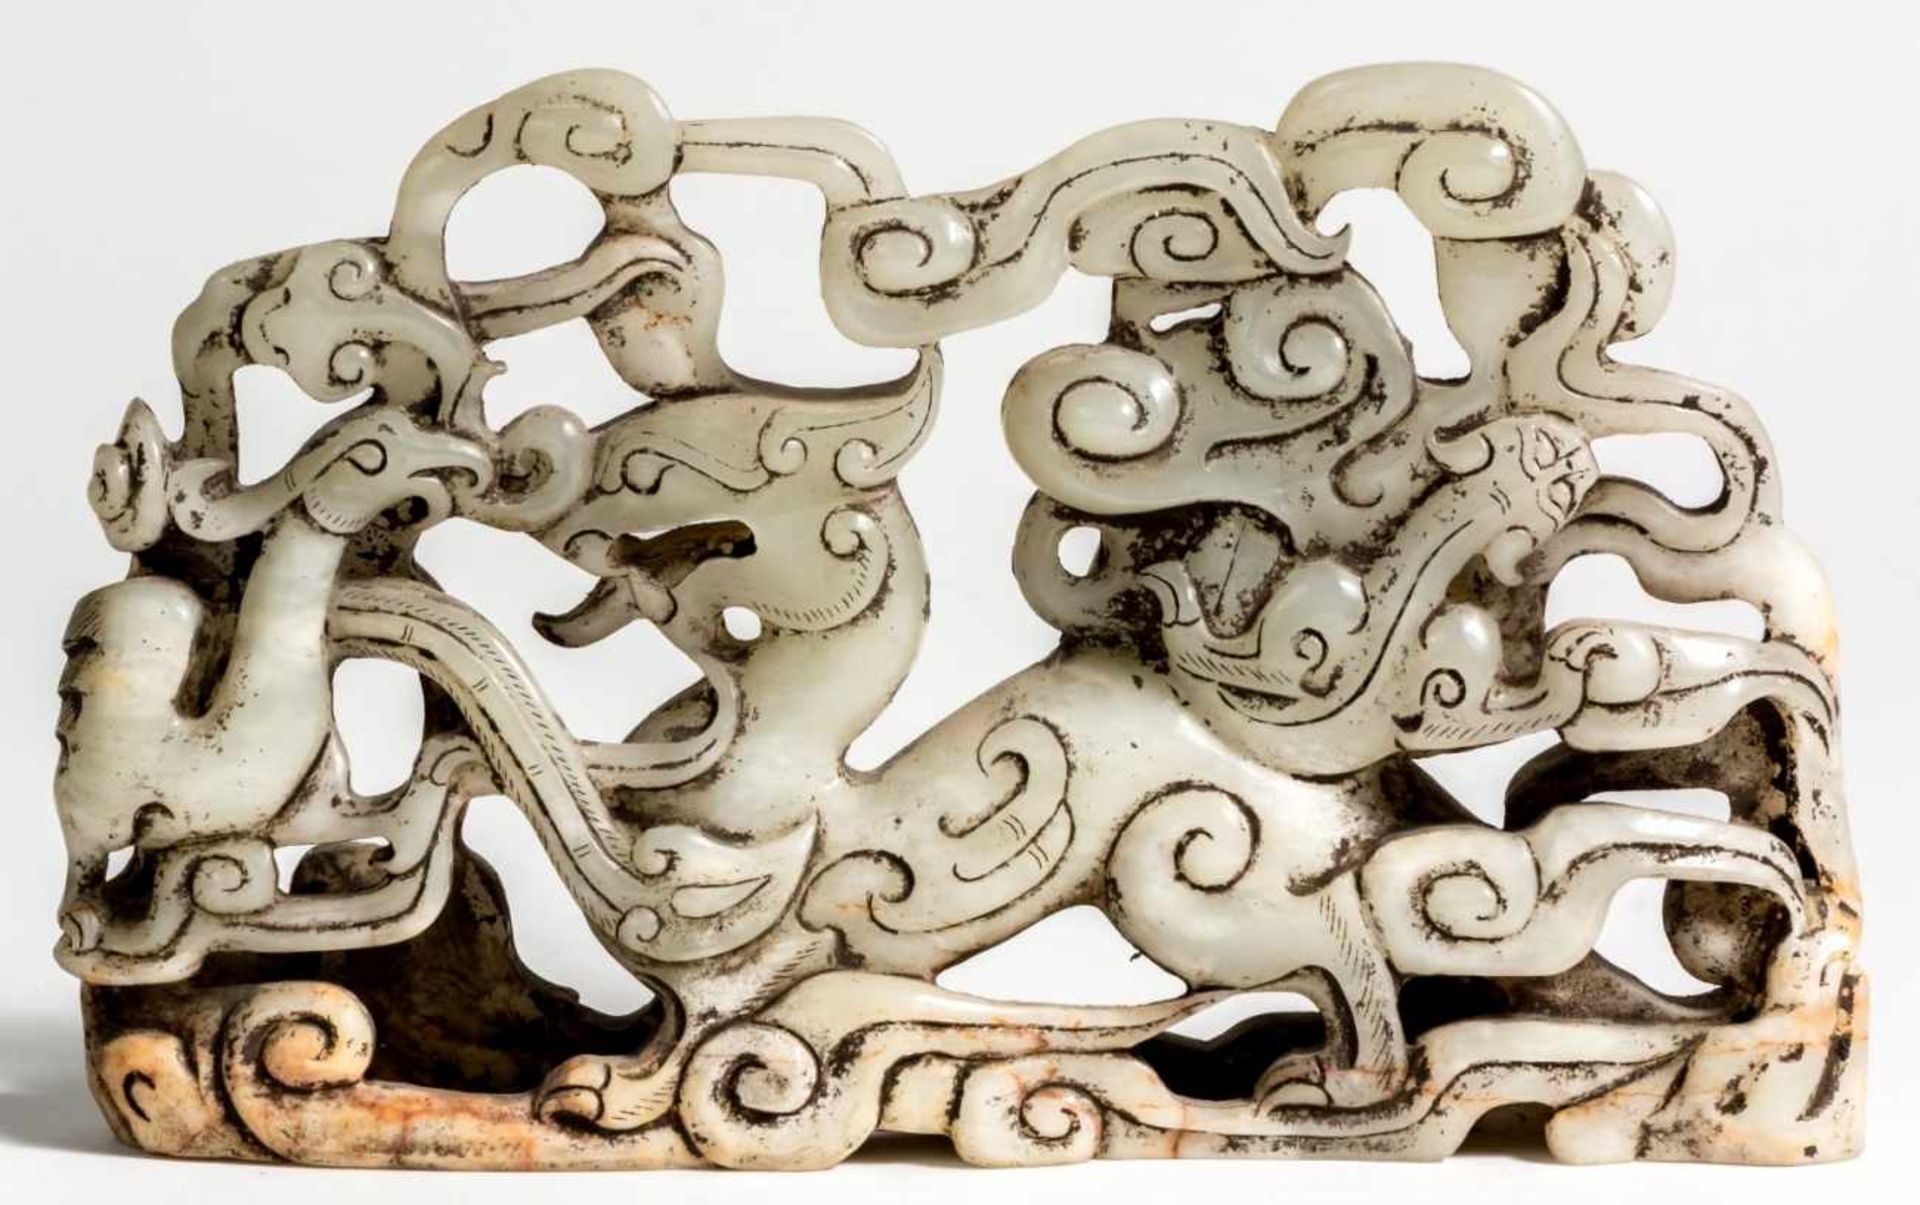 Chinesischer Jade Drachen23 x 14 x 3,5 cmProvenienz: Privatsammlung Zürich.Chinese Jade Dragon, 23 x - Bild 2 aus 2